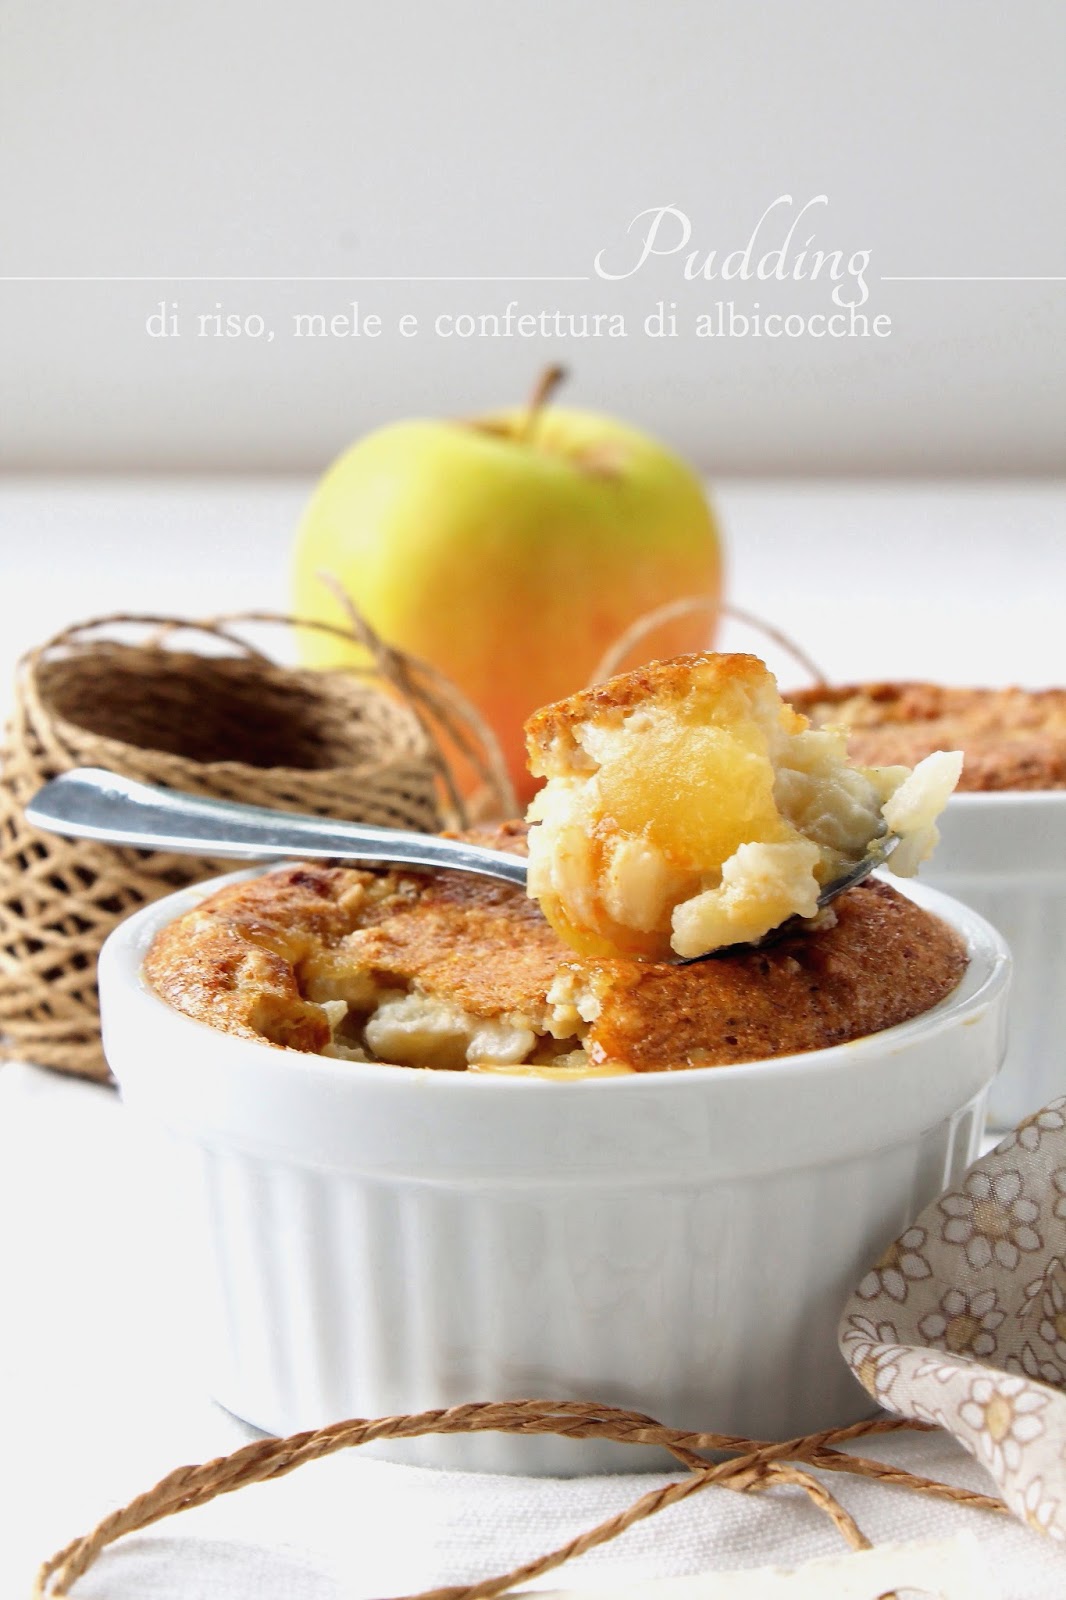 Pudding di riso, mele e confettura di albicocche